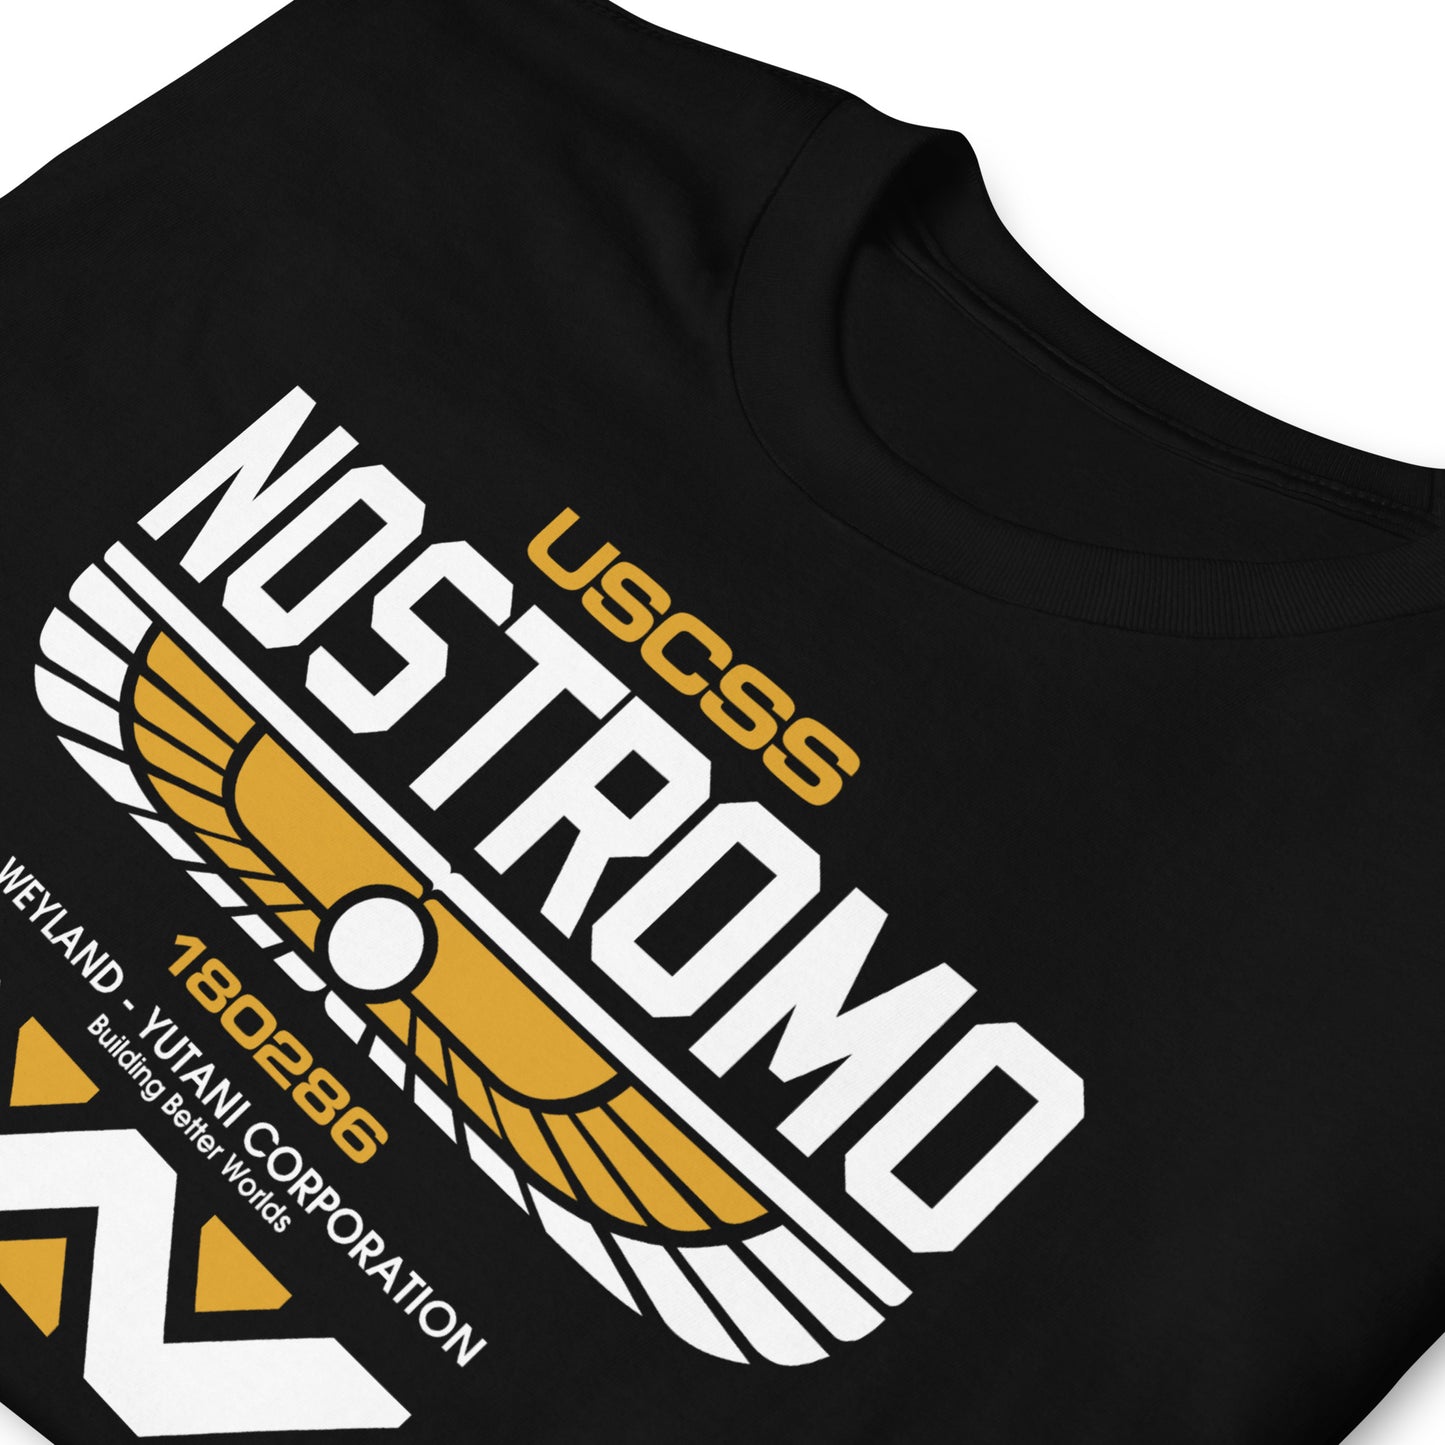 Camiseta USCSS Nostromo